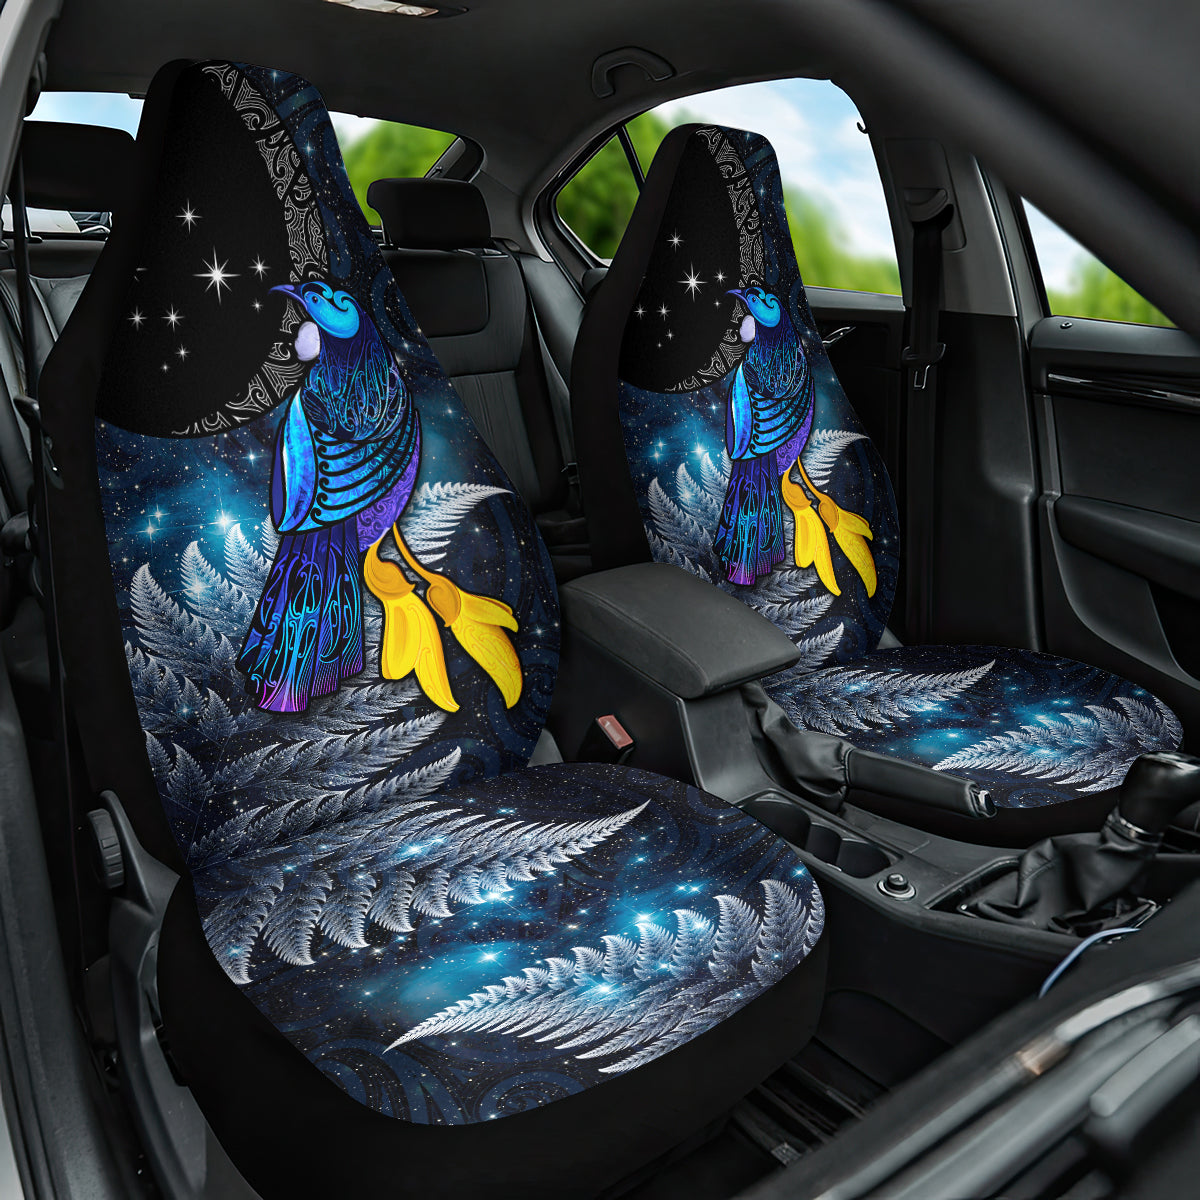 New Zealand Tui Bird Matariki Car Seat Cover Galaxy Fern With Maori Pattern